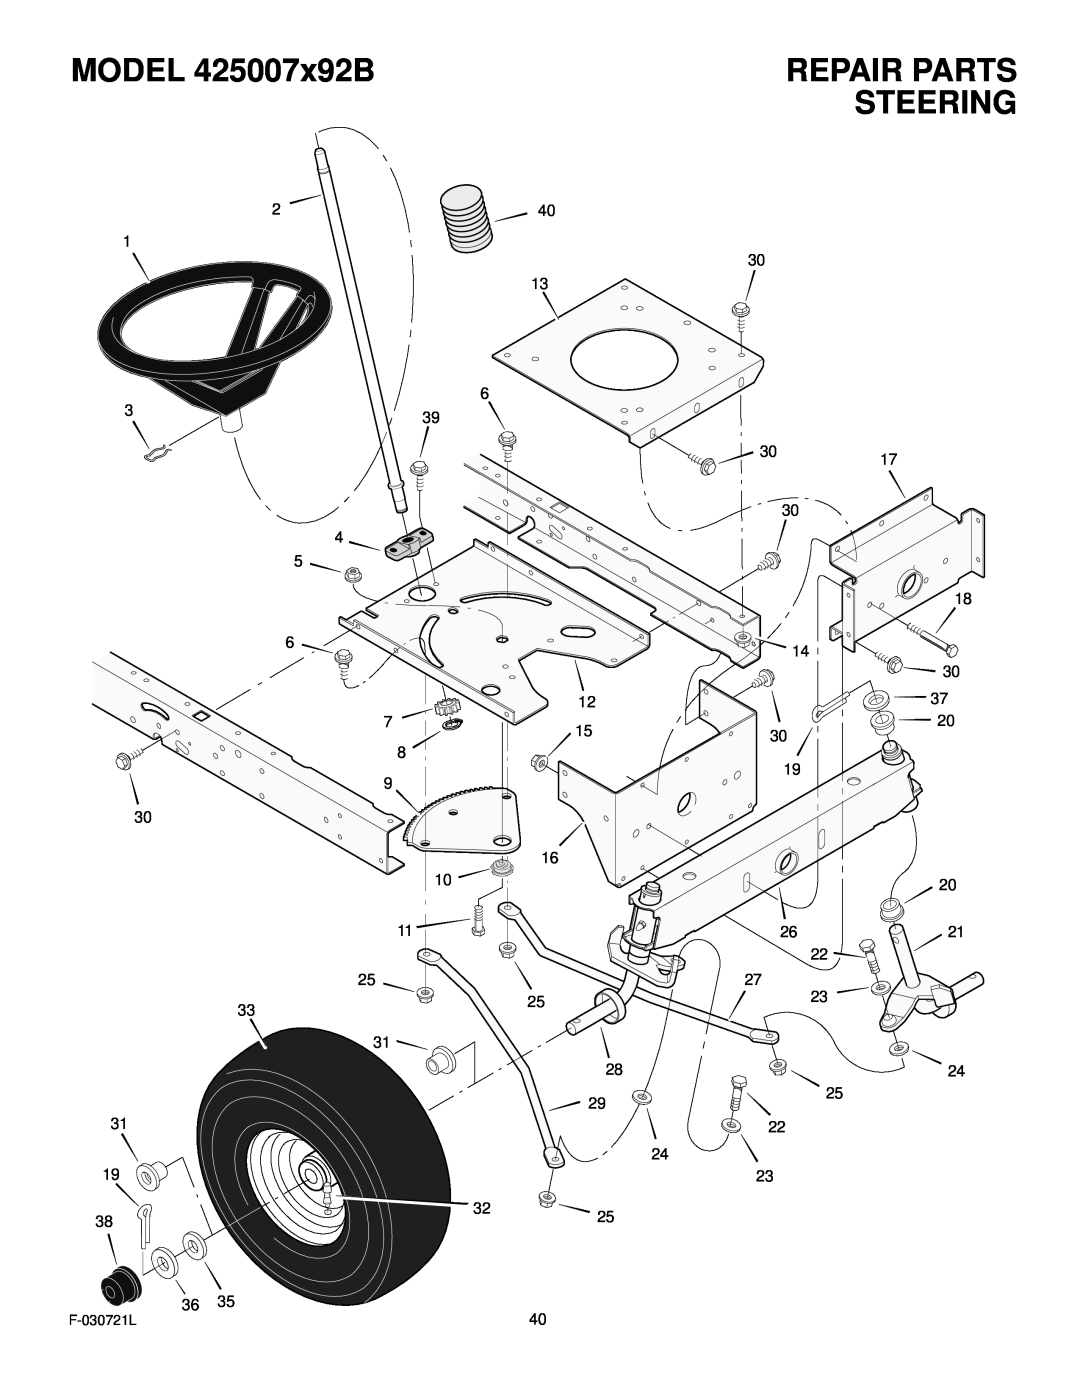 Murray manual Steering, MODEL 425007x92B, Repair Parts 